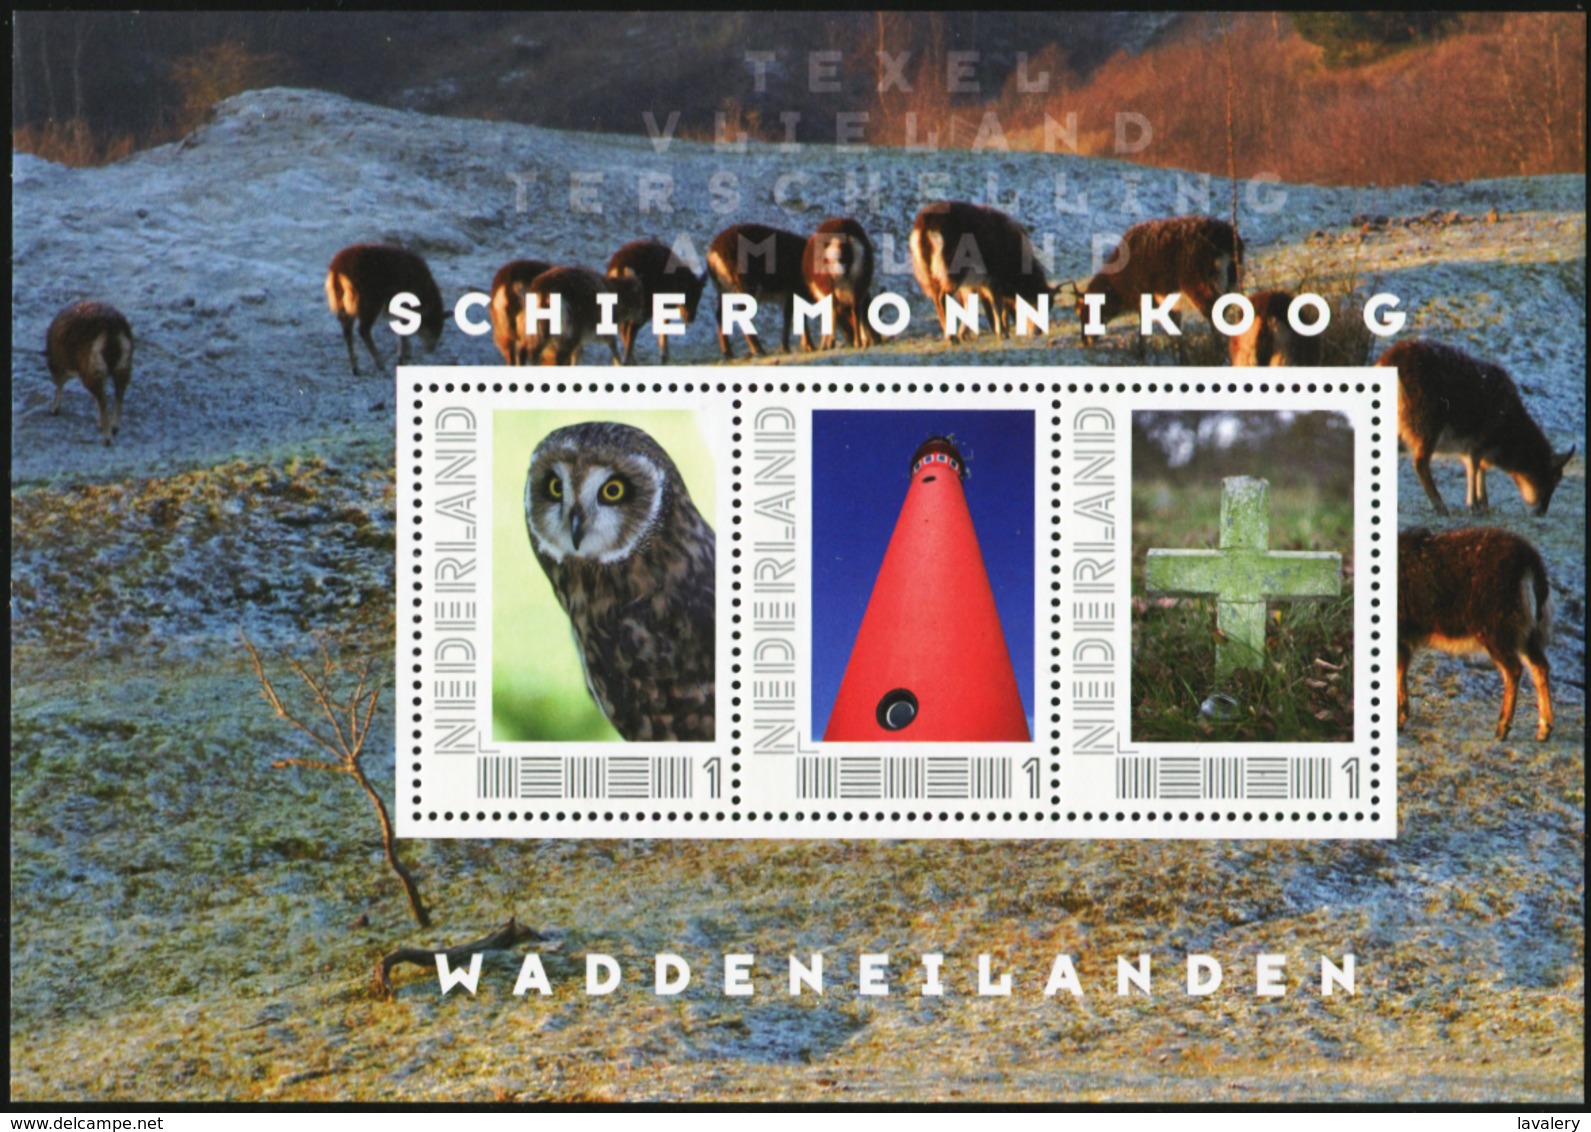 NETHERLANDS 2011 Frisian Islands Personalized Stamps Bird Owl Owls Deer Birds Animals Fauna MNH - Owls